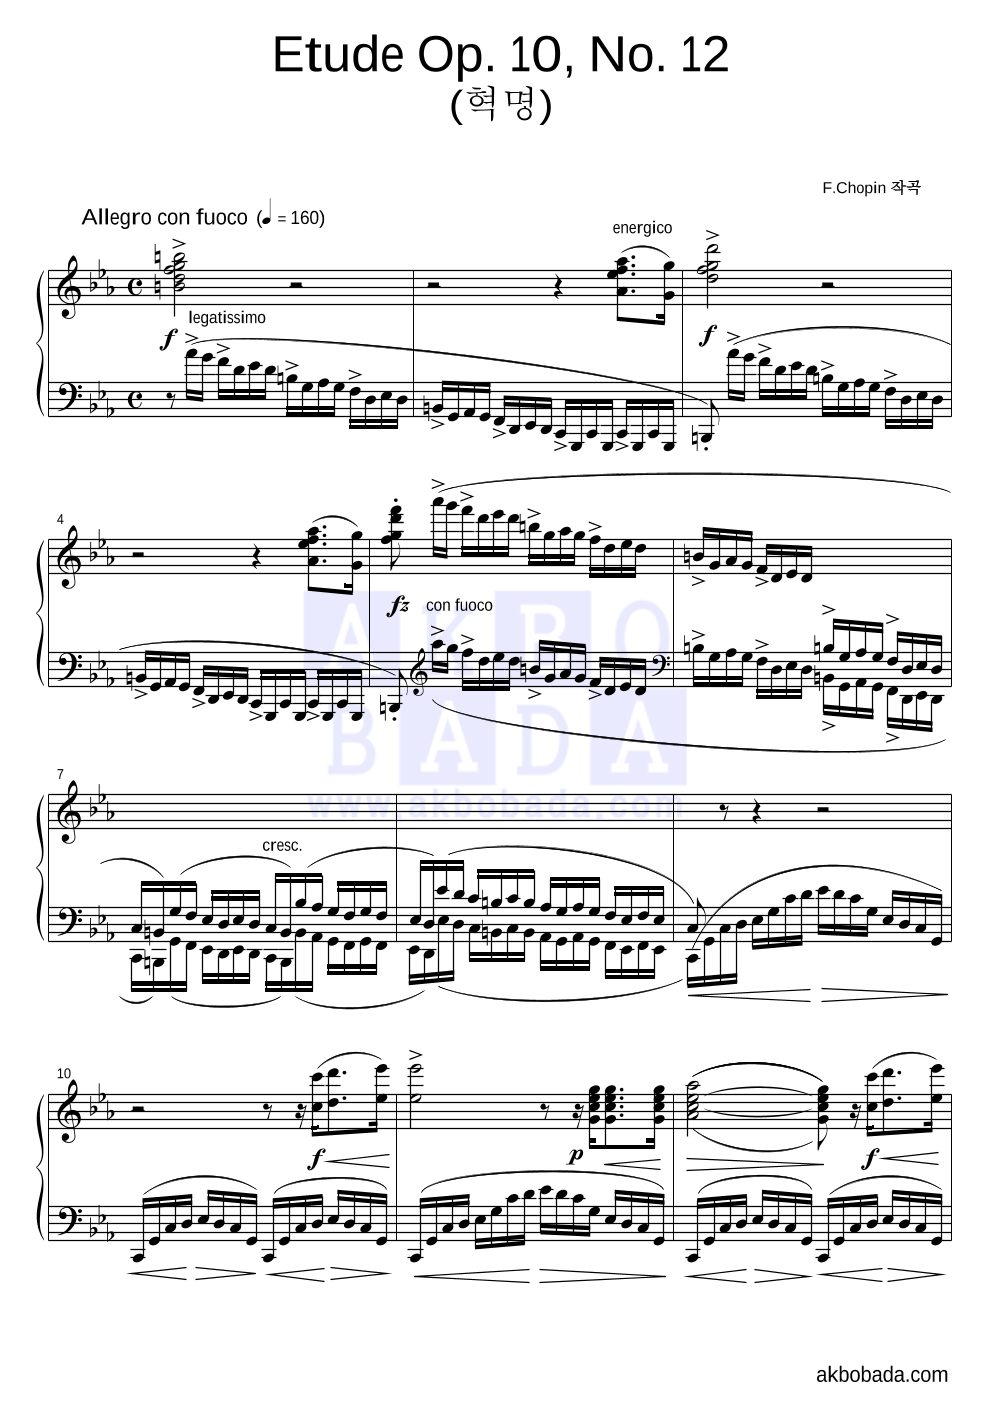 쇼팽 - Etude Op.10 No.12(혁명) 피아노 2단 악보 